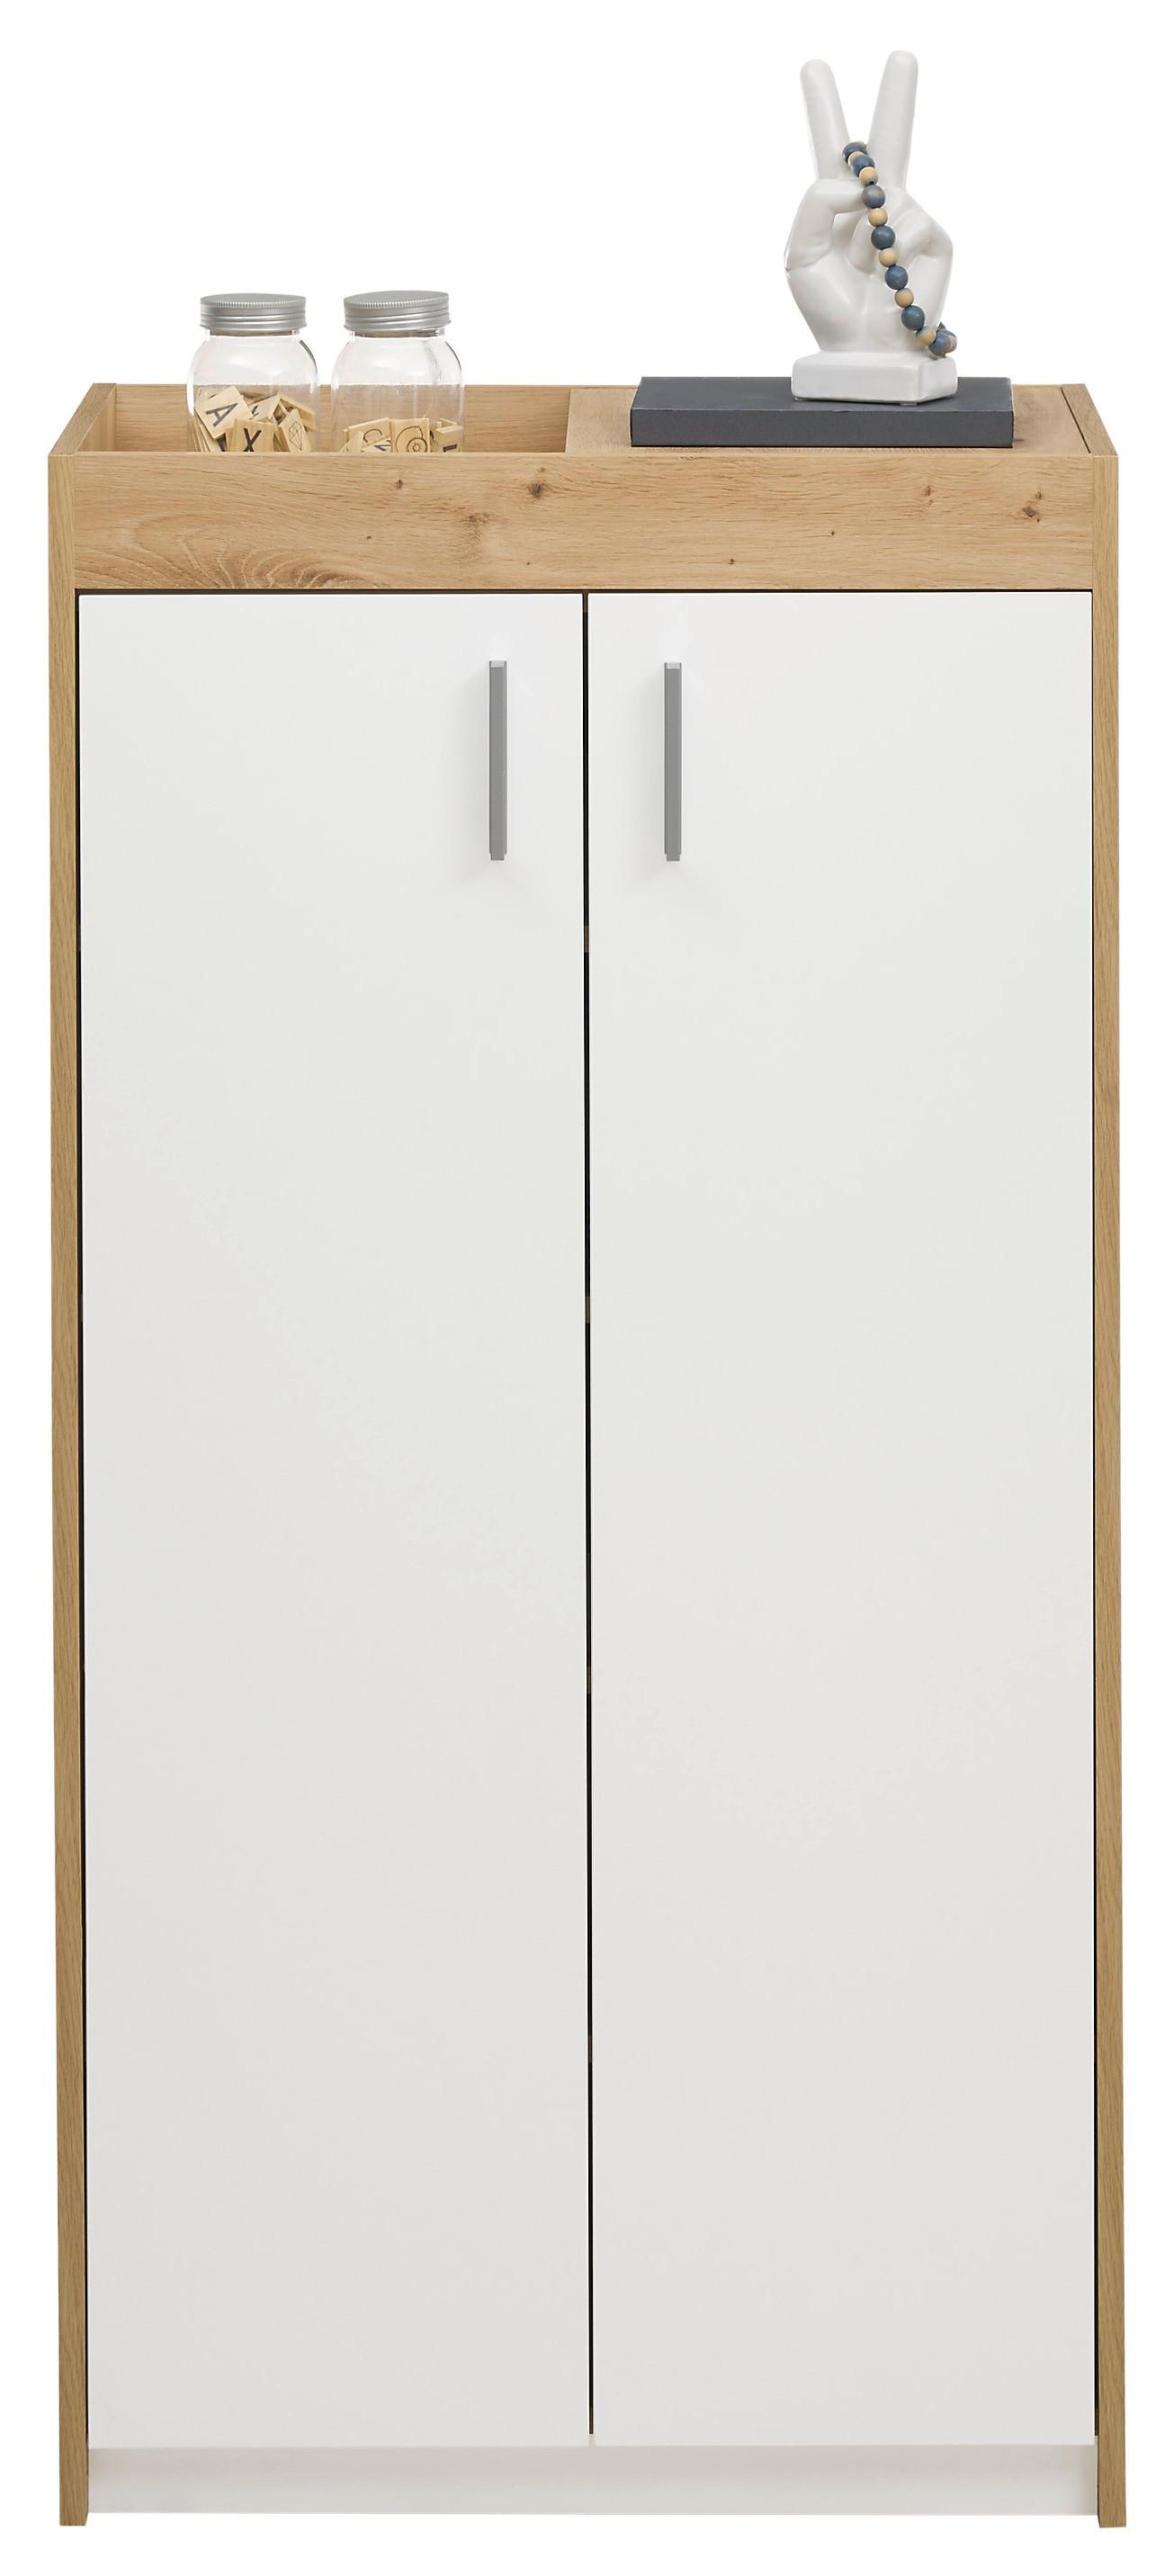 Schuhschrank Paris in Weiß/Eichefarben - Silberfarben/Weiß, MODERN, Holzwerkstoff/Kunststoff (64/126/38cm) - Modern Living